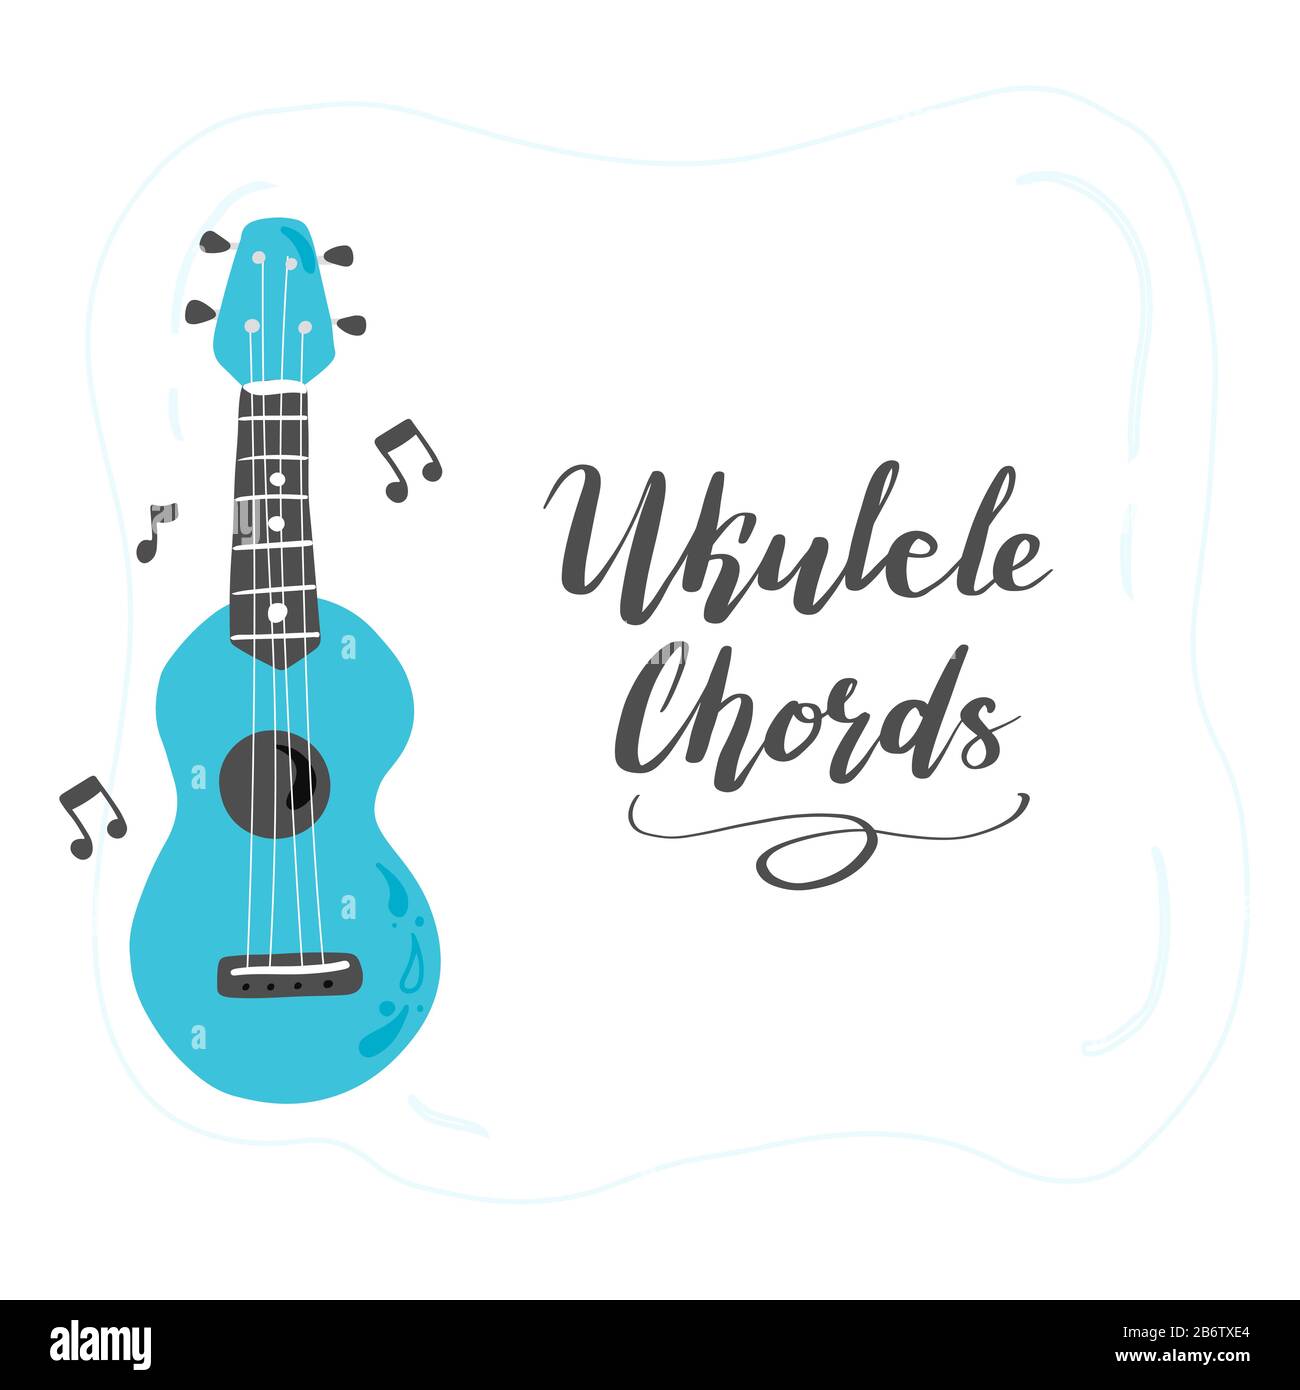 Joli ukulele de dessin animé pour affiche d'été, motif carte avec texte lettrage Ukulele Chords. Petite guitare, instrument de musique à cordes de style hawaï. Illuataration vectorielle de style simple dessiné à la main. Illustration de Vecteur